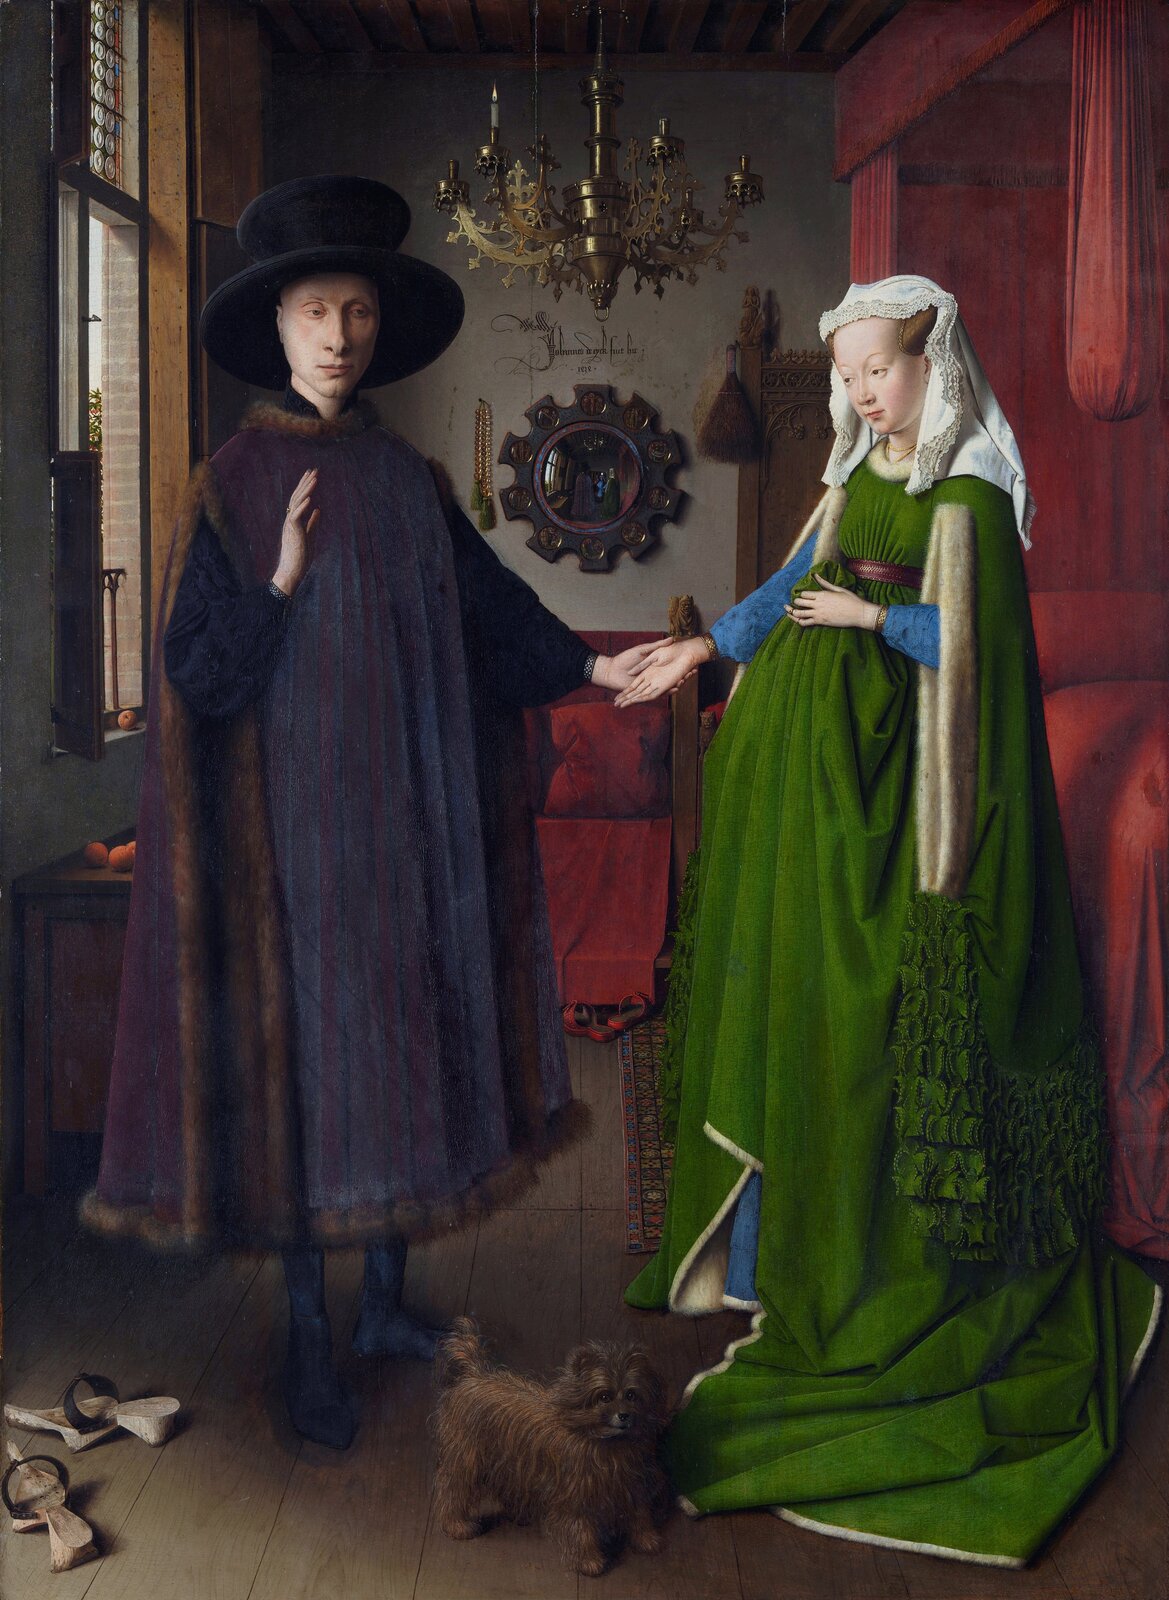 Ilustracja przedstawia obraz Jana van Eycka „Portret małżonków Arnolfinich”. Ukazuje parę w uroczystych strojach we wnętrzu. Małżonkowie trzymają się za ręce. Mężczyzna ma podniesioną rękę na znak składania przysięgi. Kobieta trzyma dłoń na brzemiennym brzuchu. Po lewej stronie znajduje się okno, a po prawej czerwone łóżko. W tle wisi wypukłe lustro, w którym odbijają się małżonkowie oraz inny świadek zaślubin. U góry wisi żyrandol z jedną zapalona świecą. Pomiędzy parą stoi pies, a obok mężczyzny stoją porzucone chodaki.